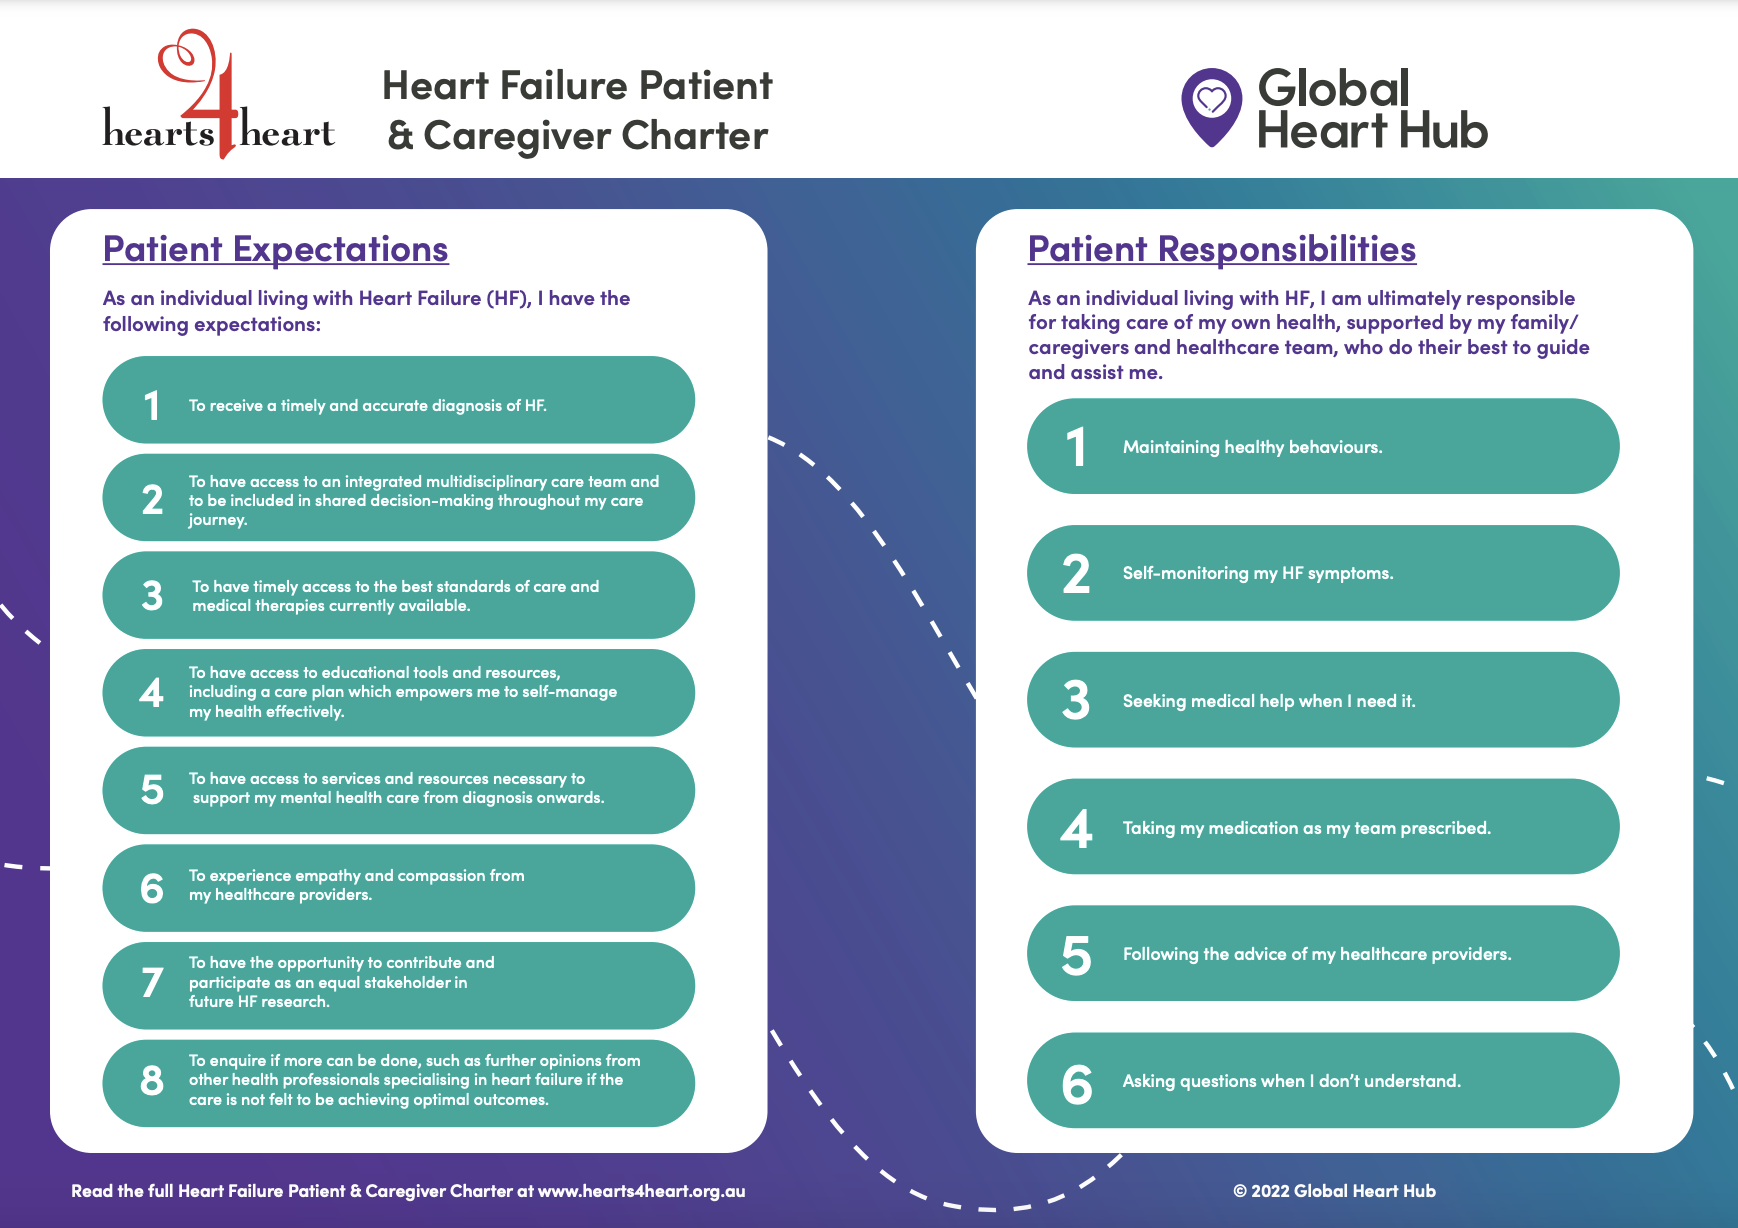 Heart Failure Patient & Caregiver Charter